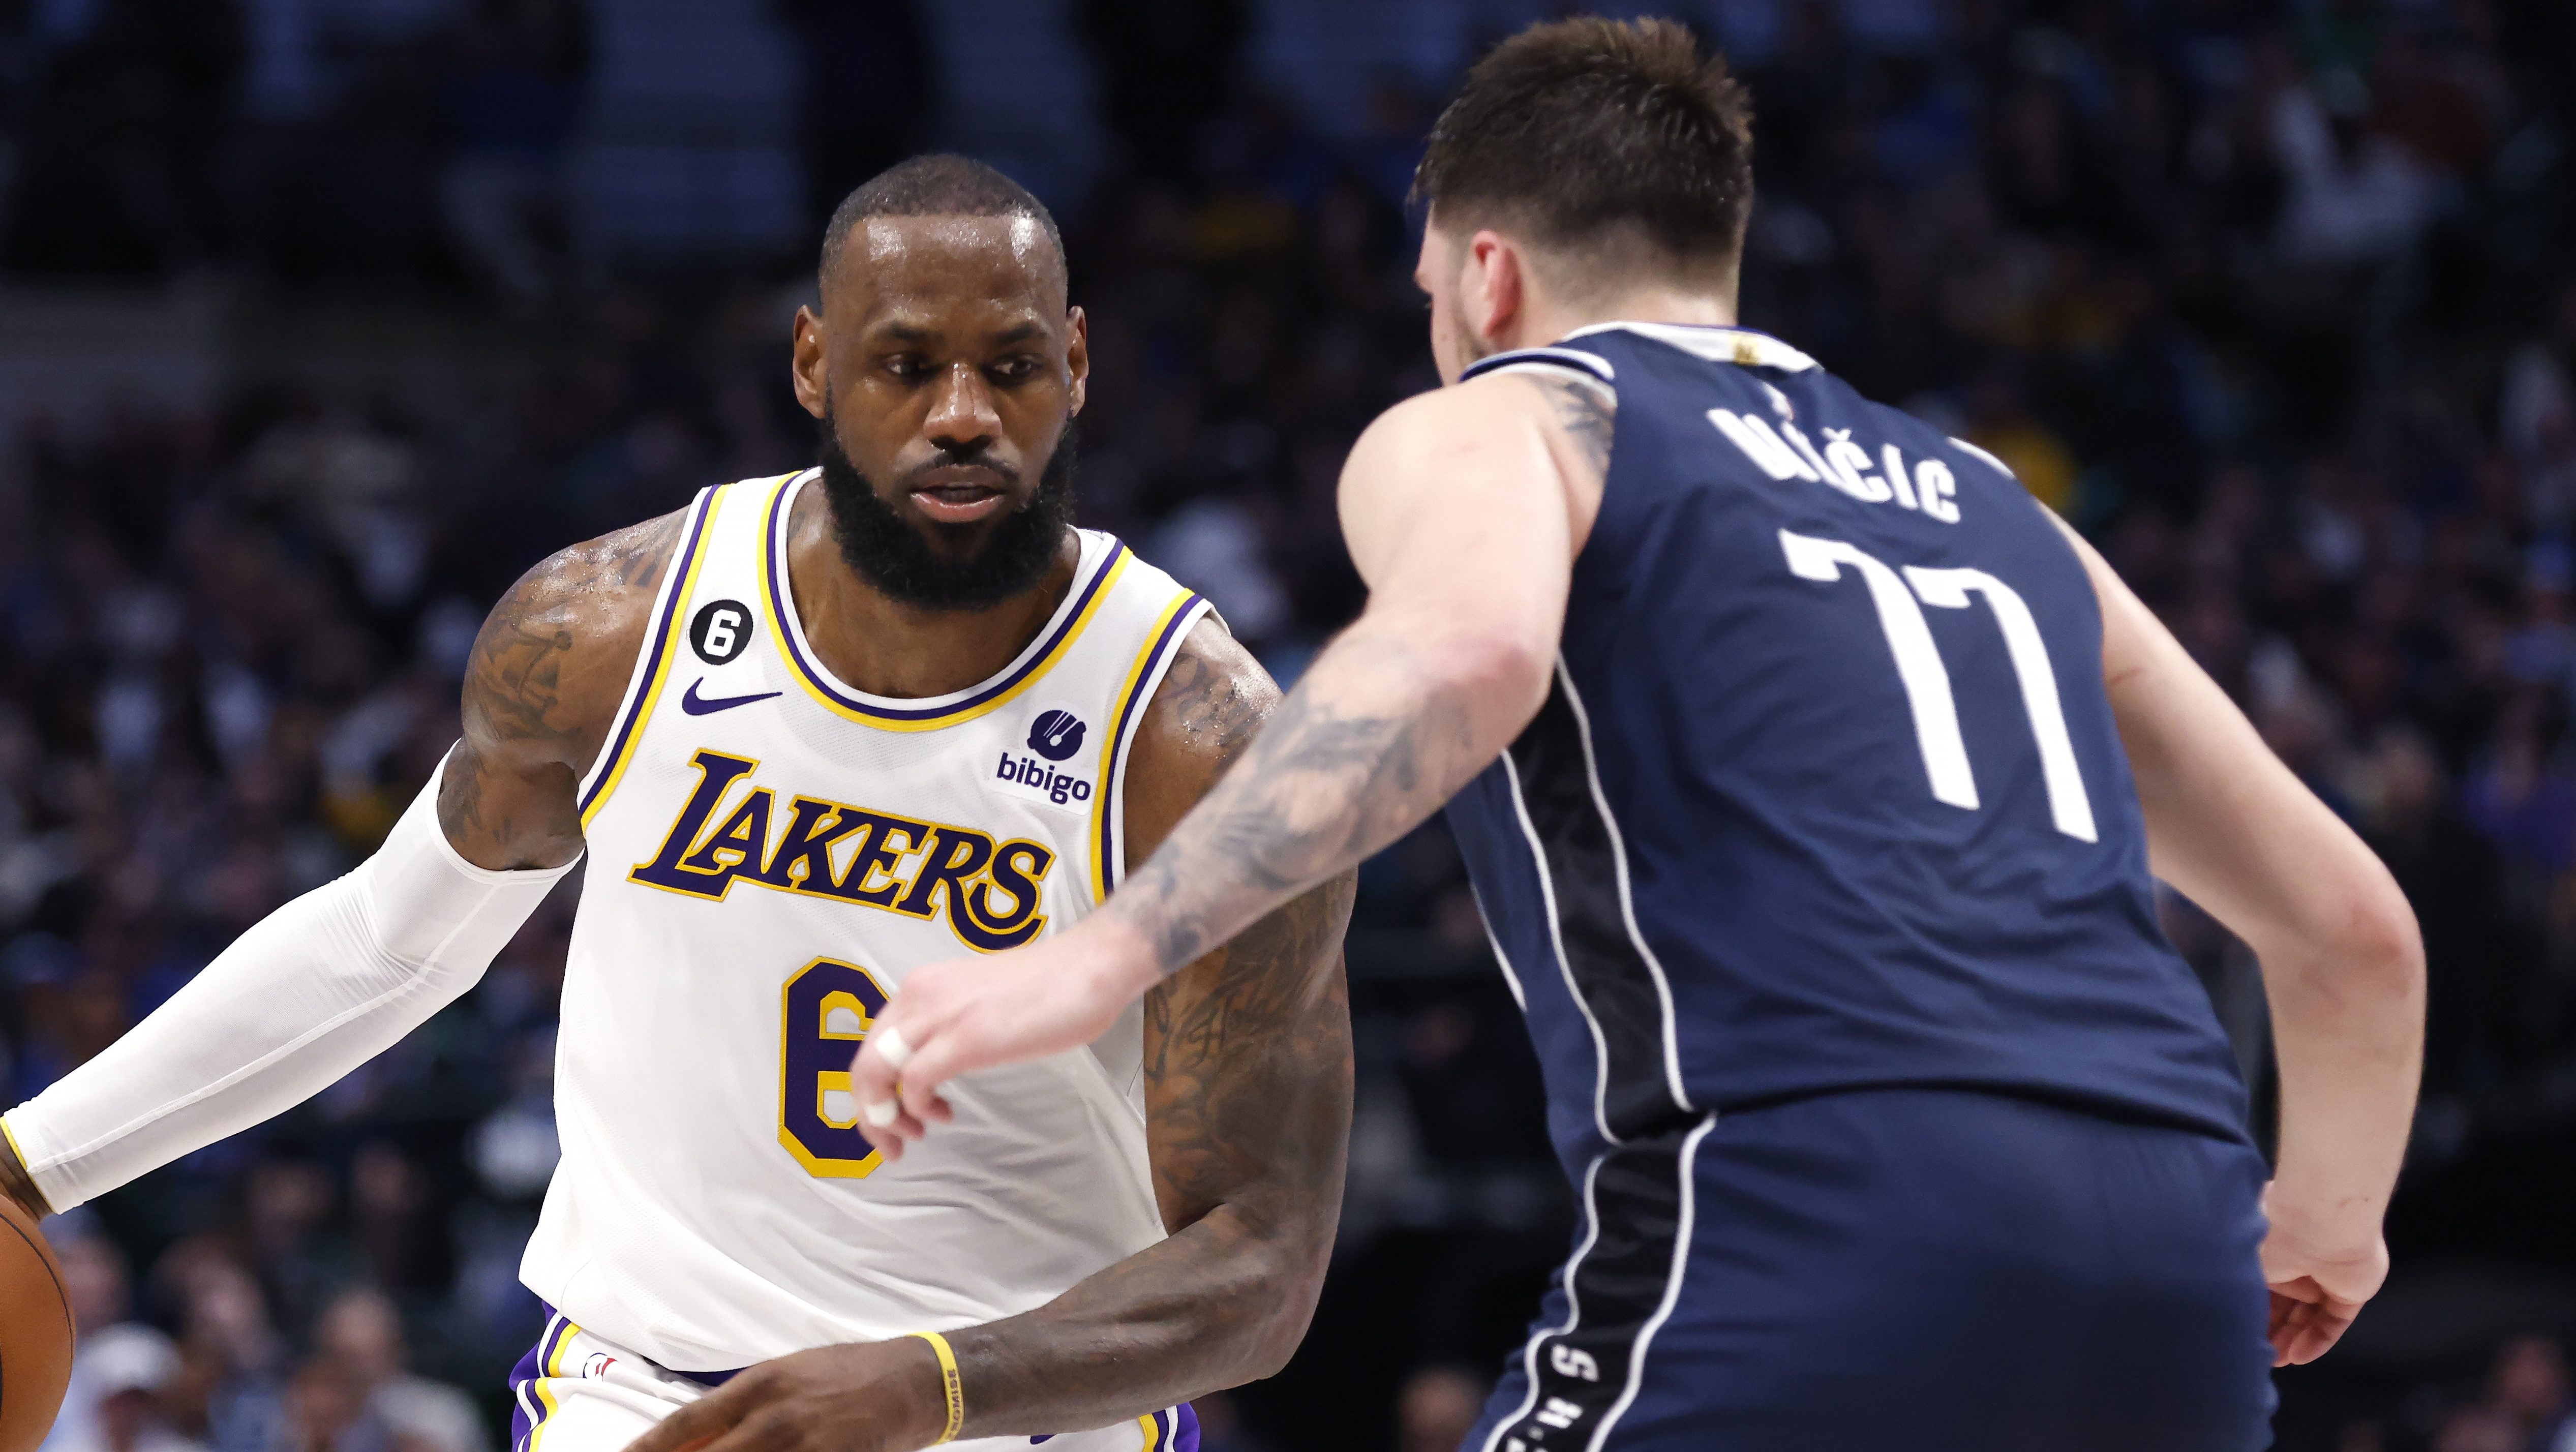 RUMOR: Lakers star LeBron James' true feelings on potential Kevin